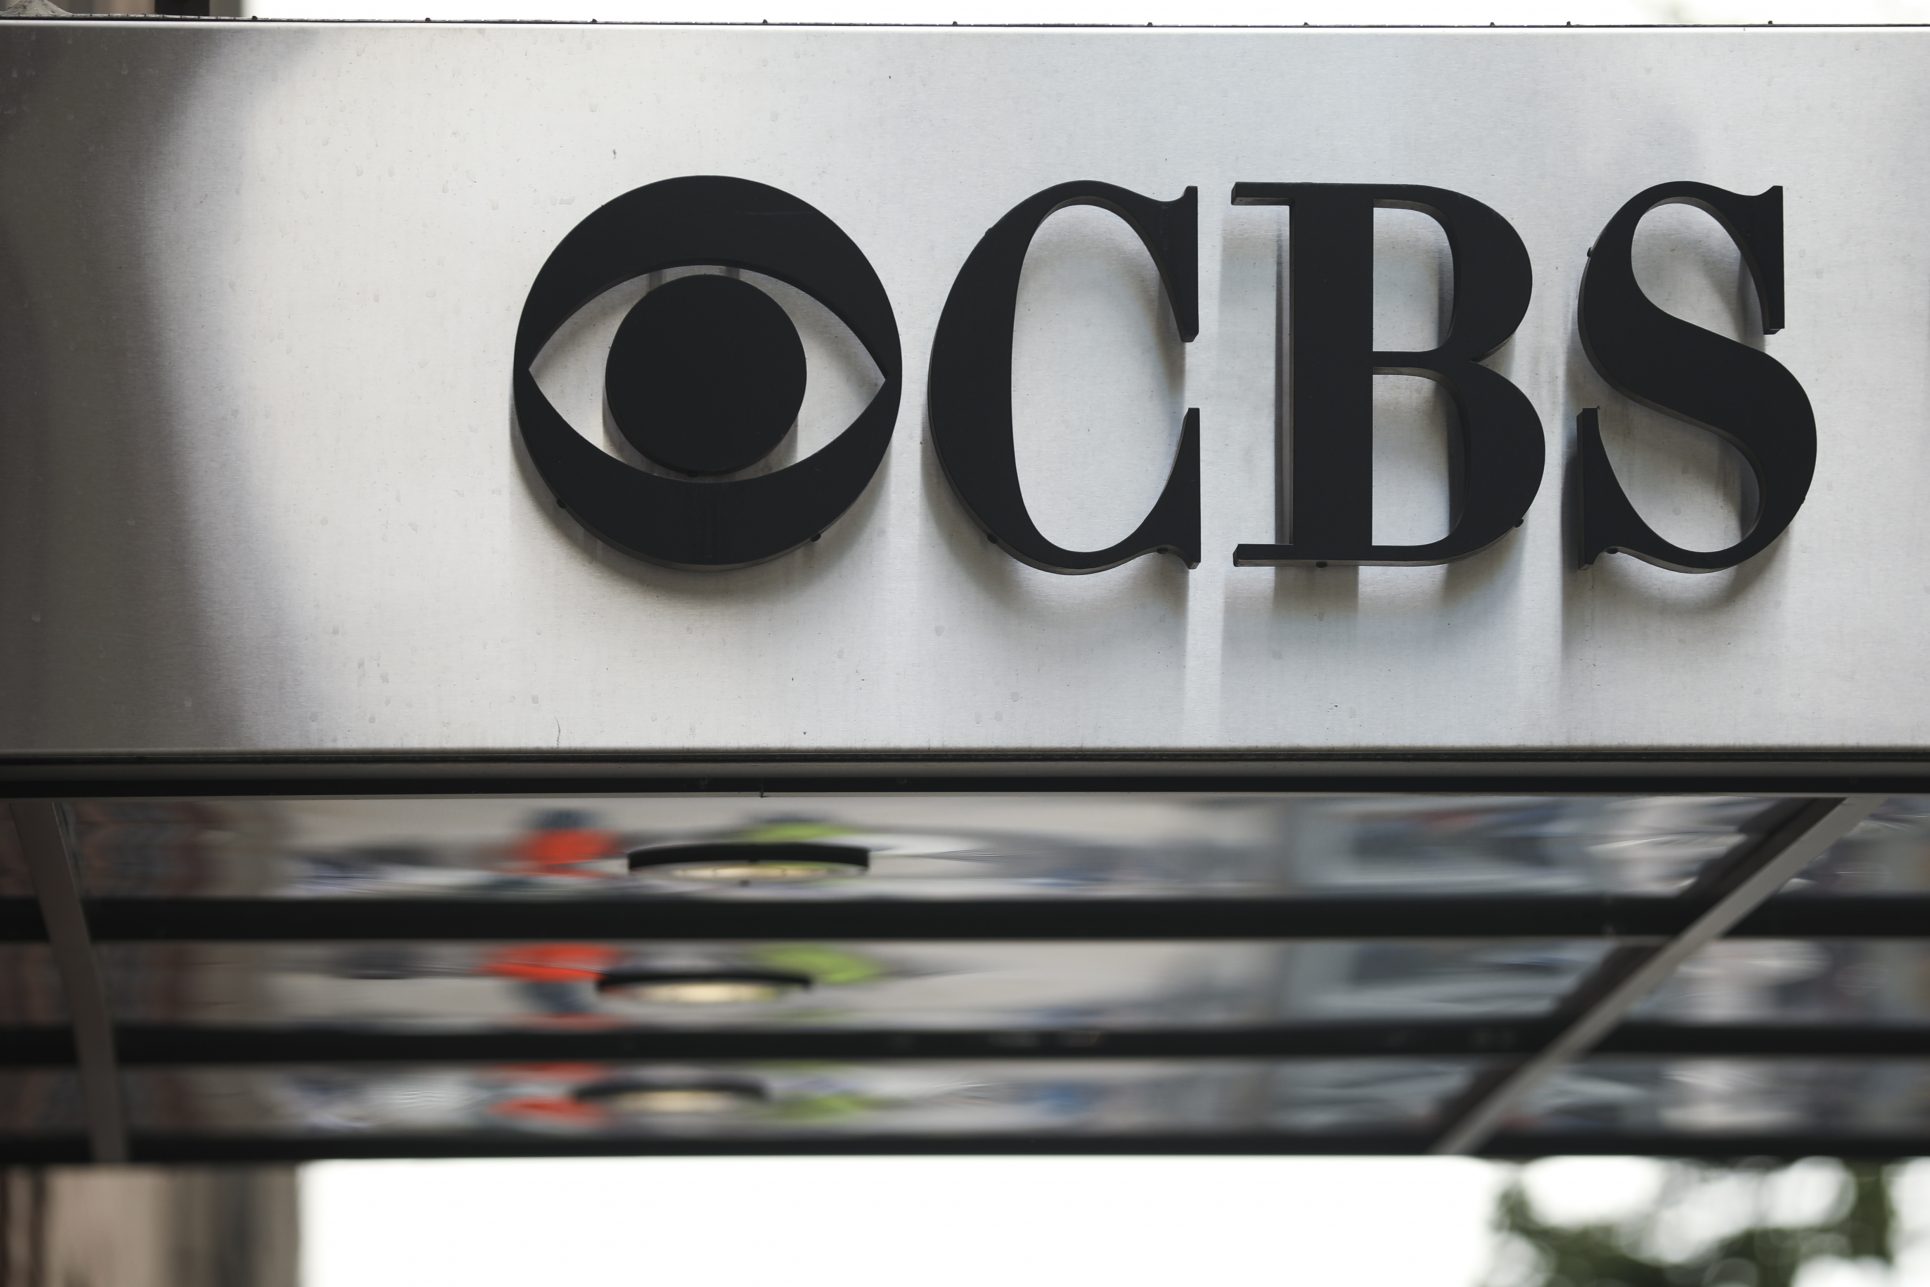 CBS prepara una miniserie sobre Trump, inspirada en libro del exjefe del FBI